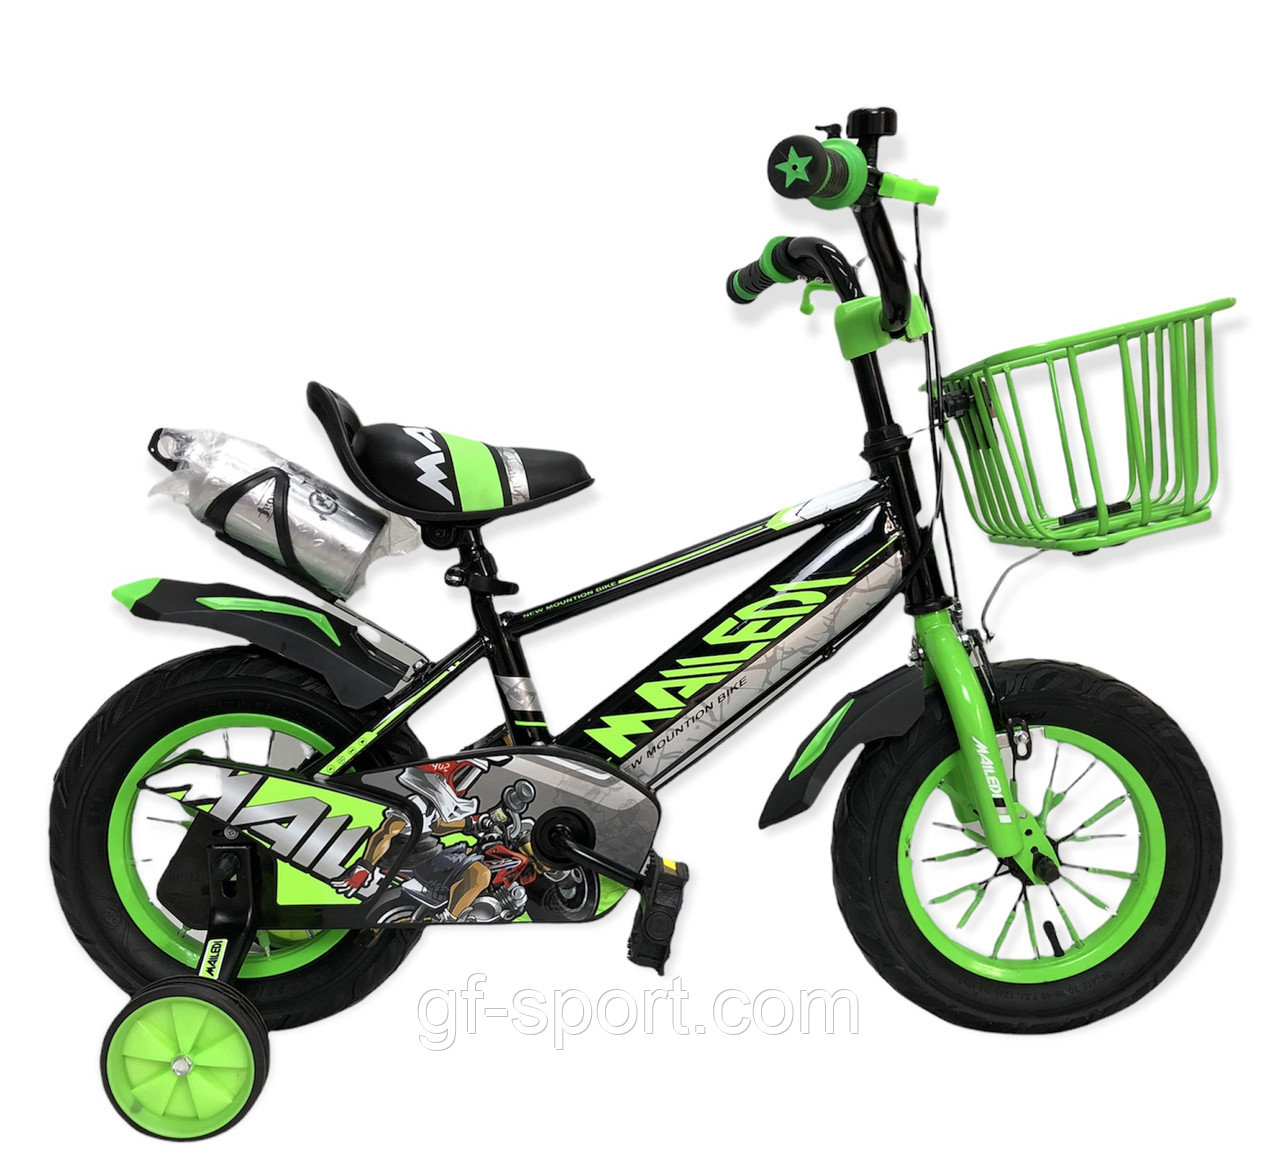 Велосипед Mailedi зеленый оригинал детский с холостым ходом 12 размер (507-12)